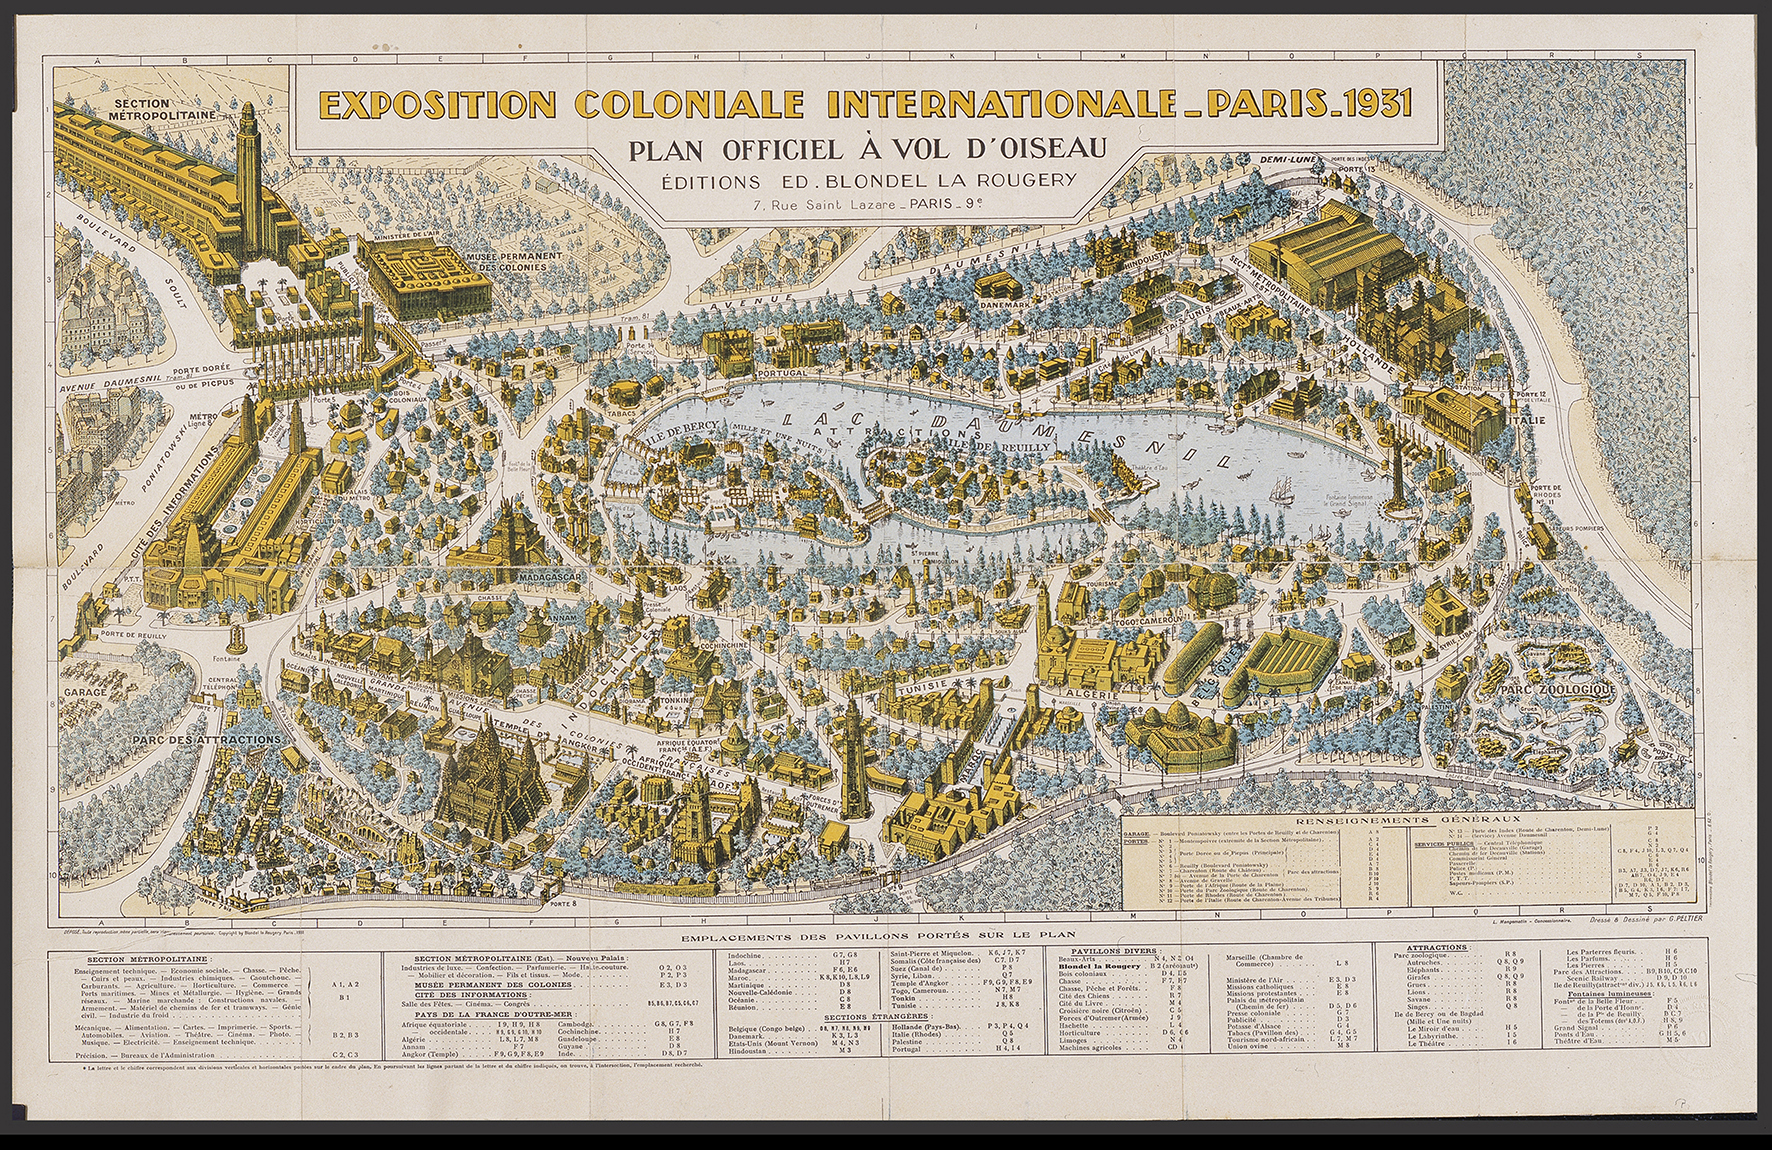 « Visite la exposicion colonial international, Paris Mayo-noviembre 1931 »